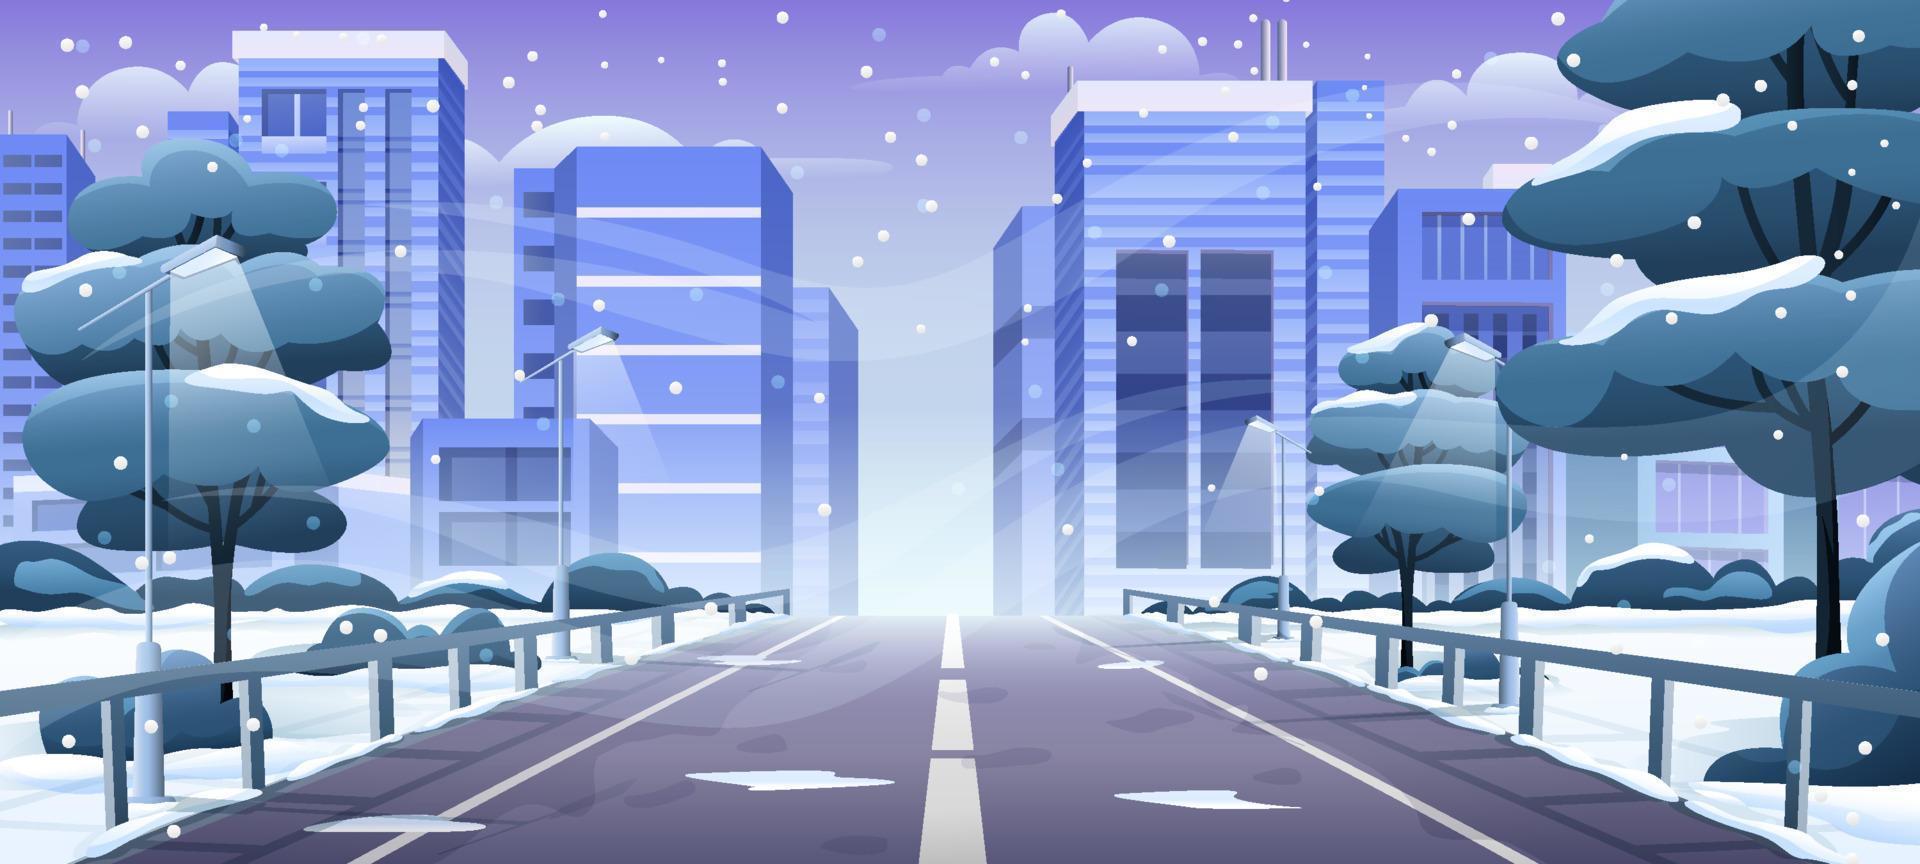 landskap snöig vinter- stad landskap bakgrund vektor